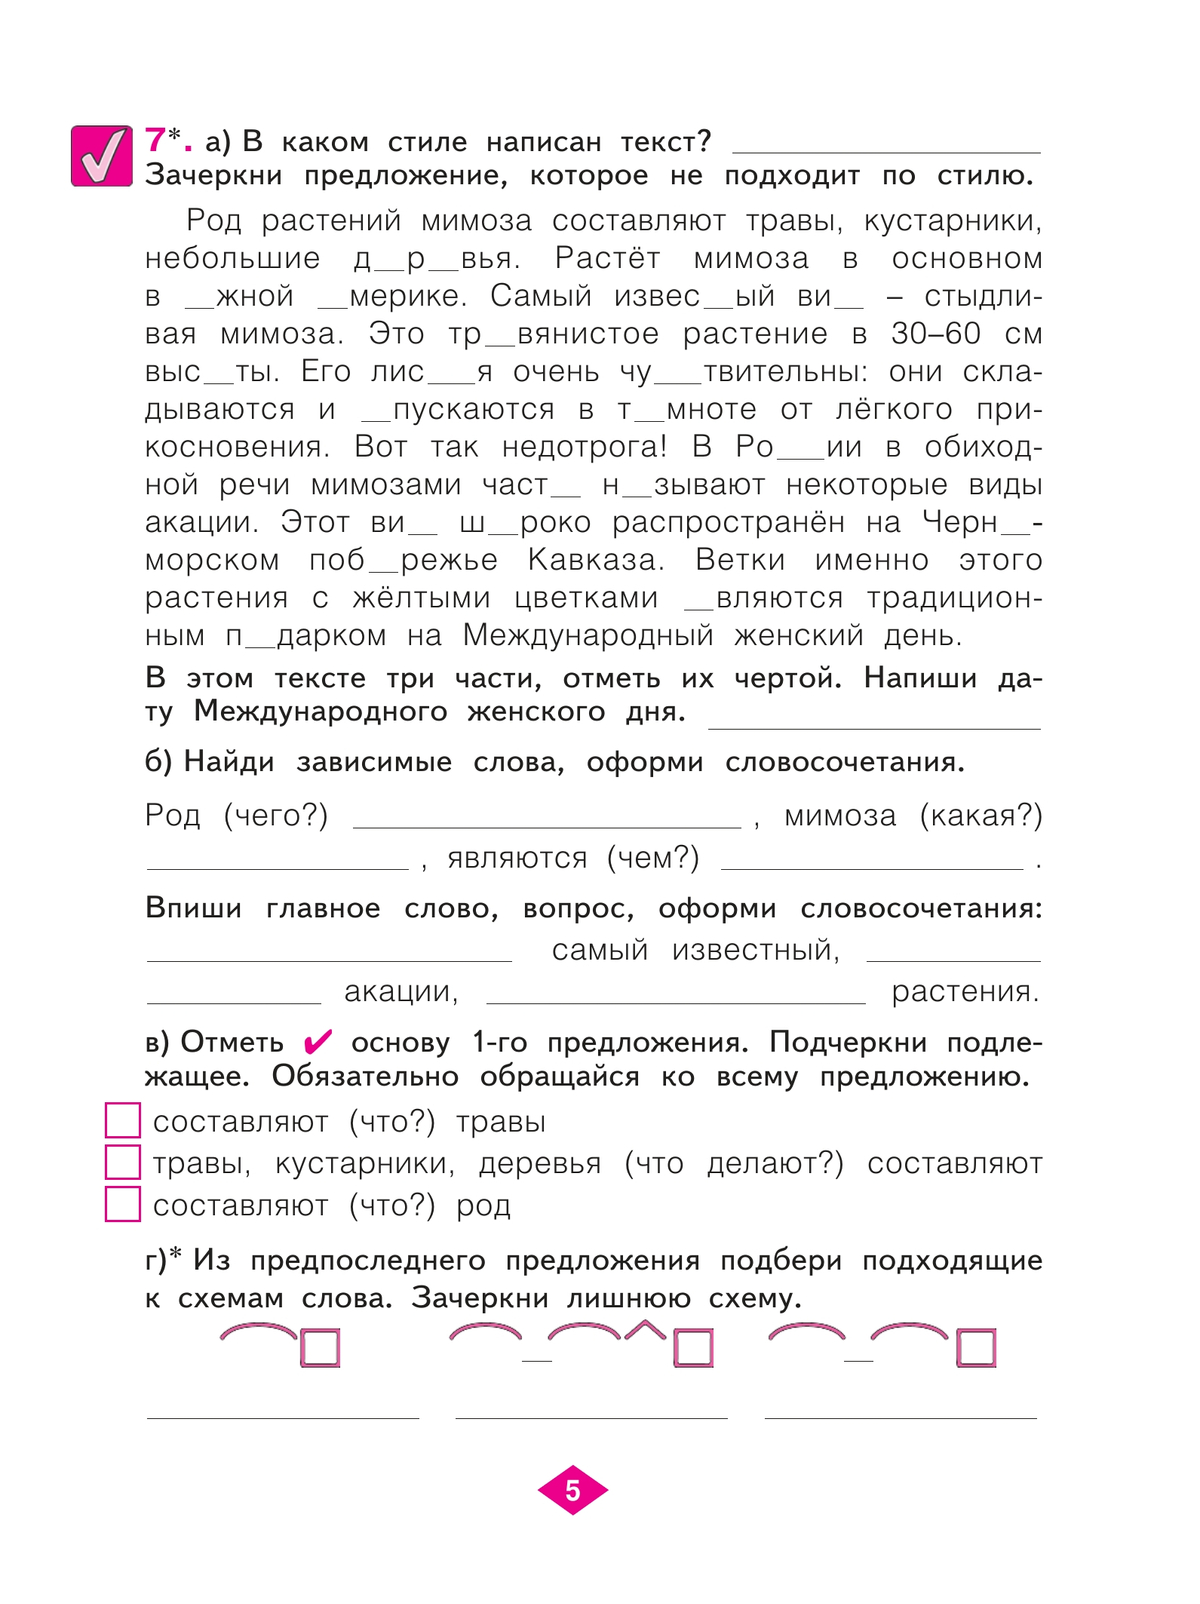 Русский язык. Рабочая тетрадь. 3 класс. В 4-х частях. Часть 3 6